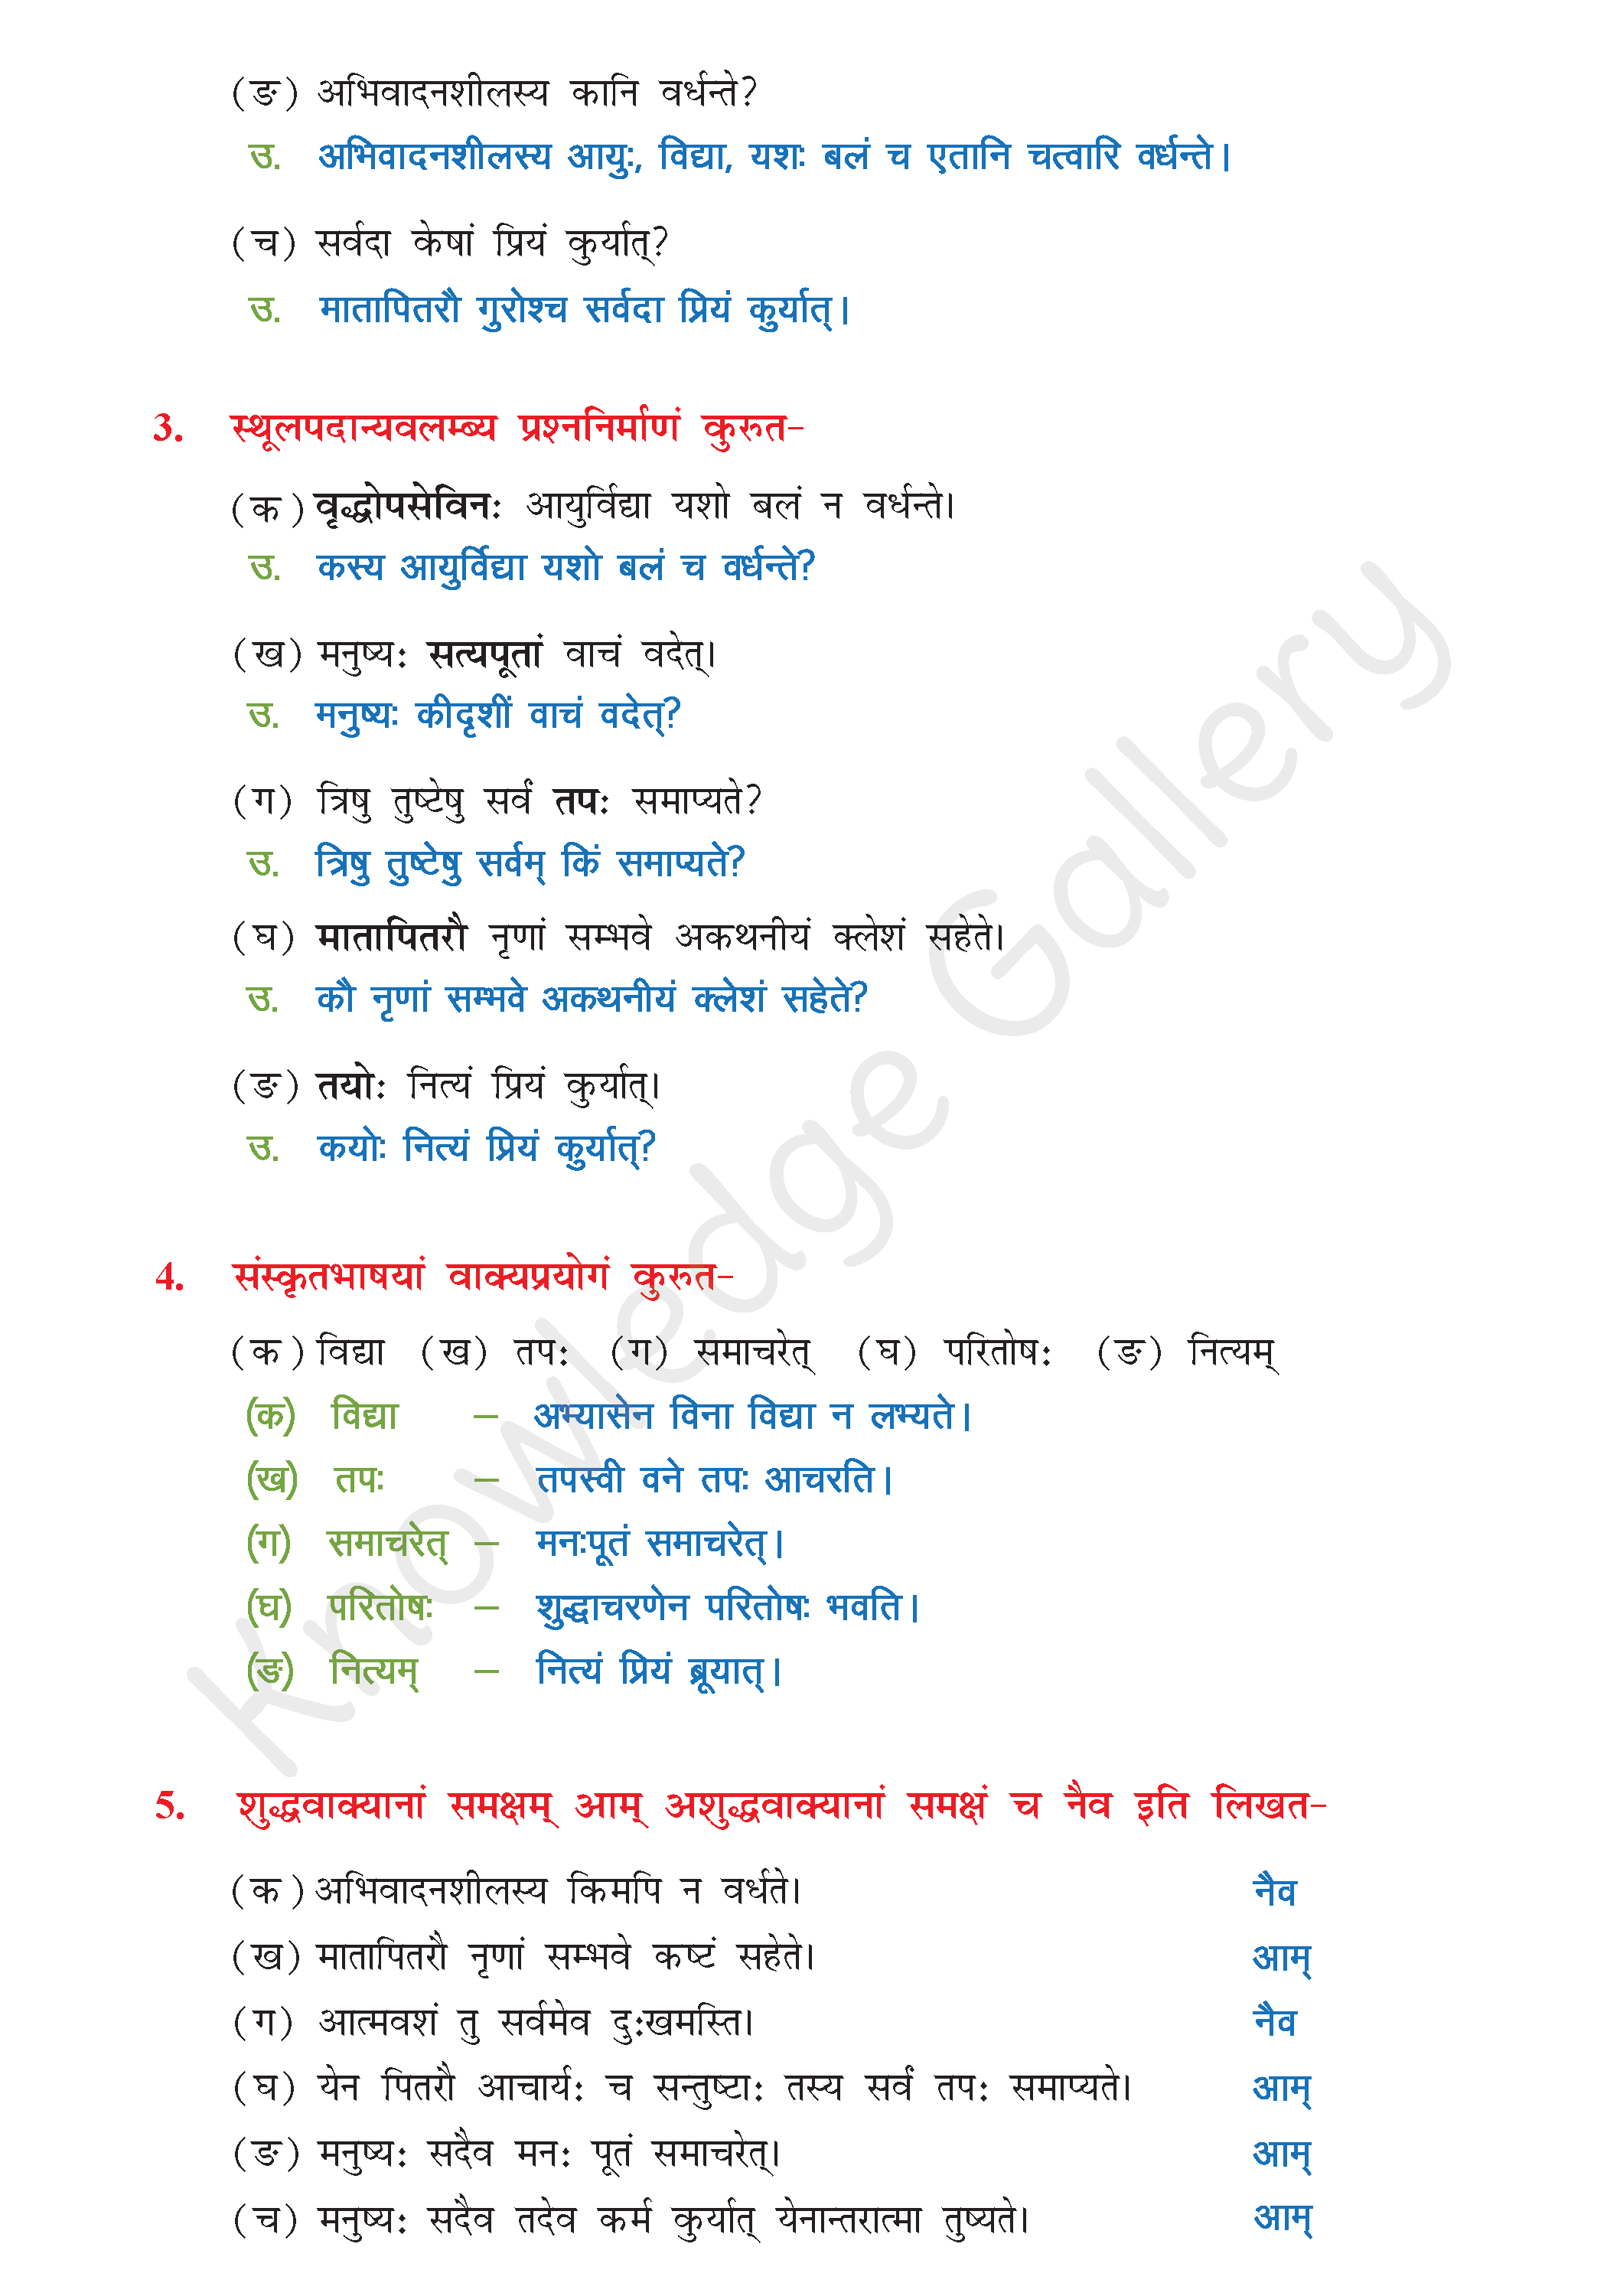 NCERT Solution For Class 8 Sanskrit Chapter 10 part 4